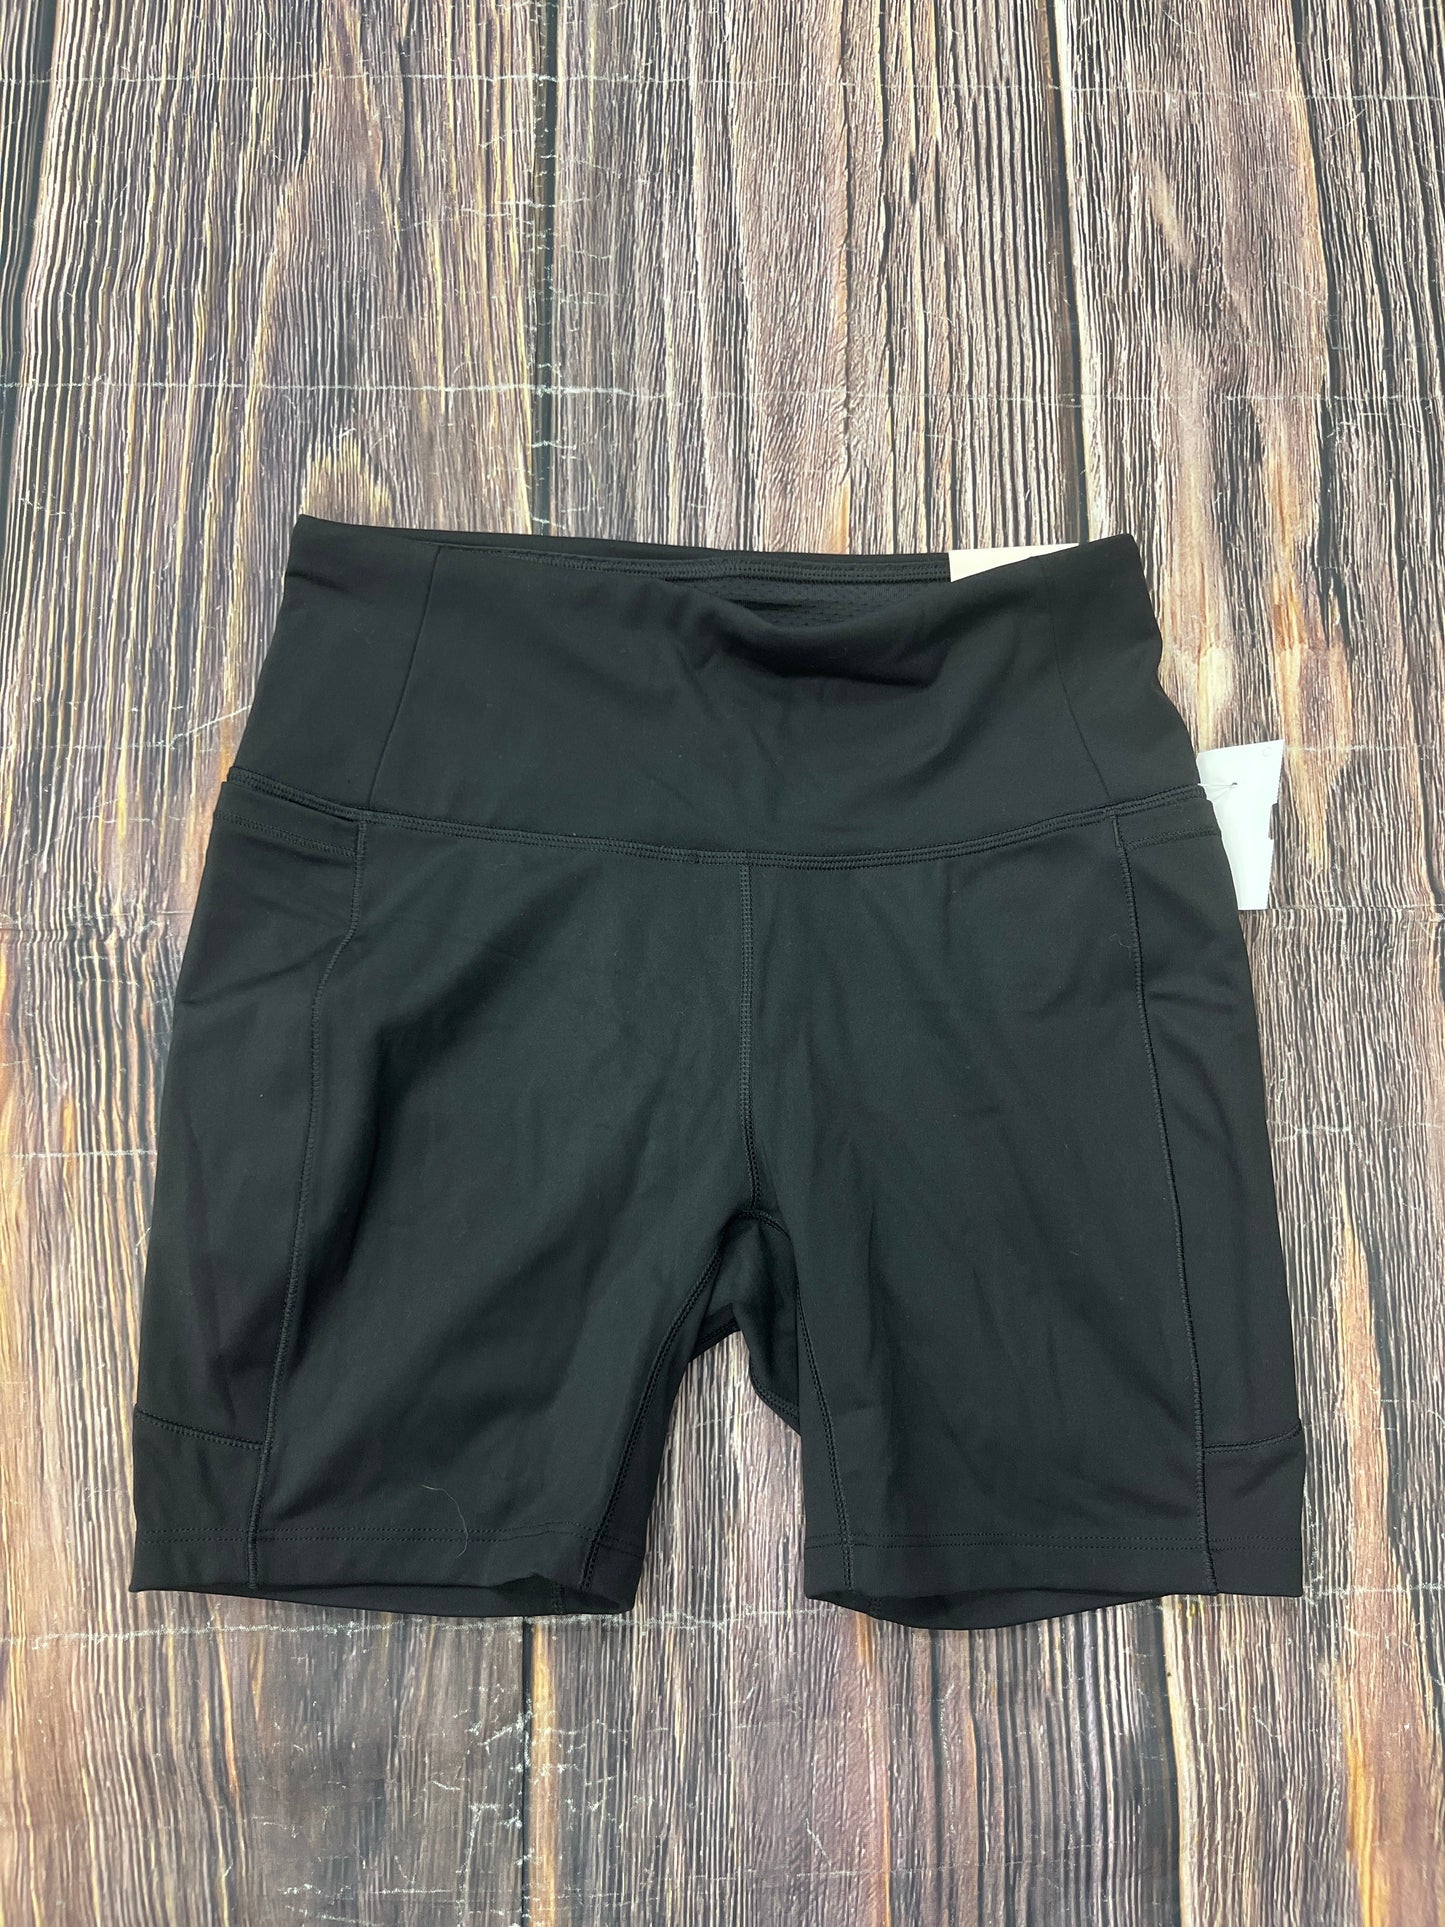 Black Athletic Shorts Calia, Size S